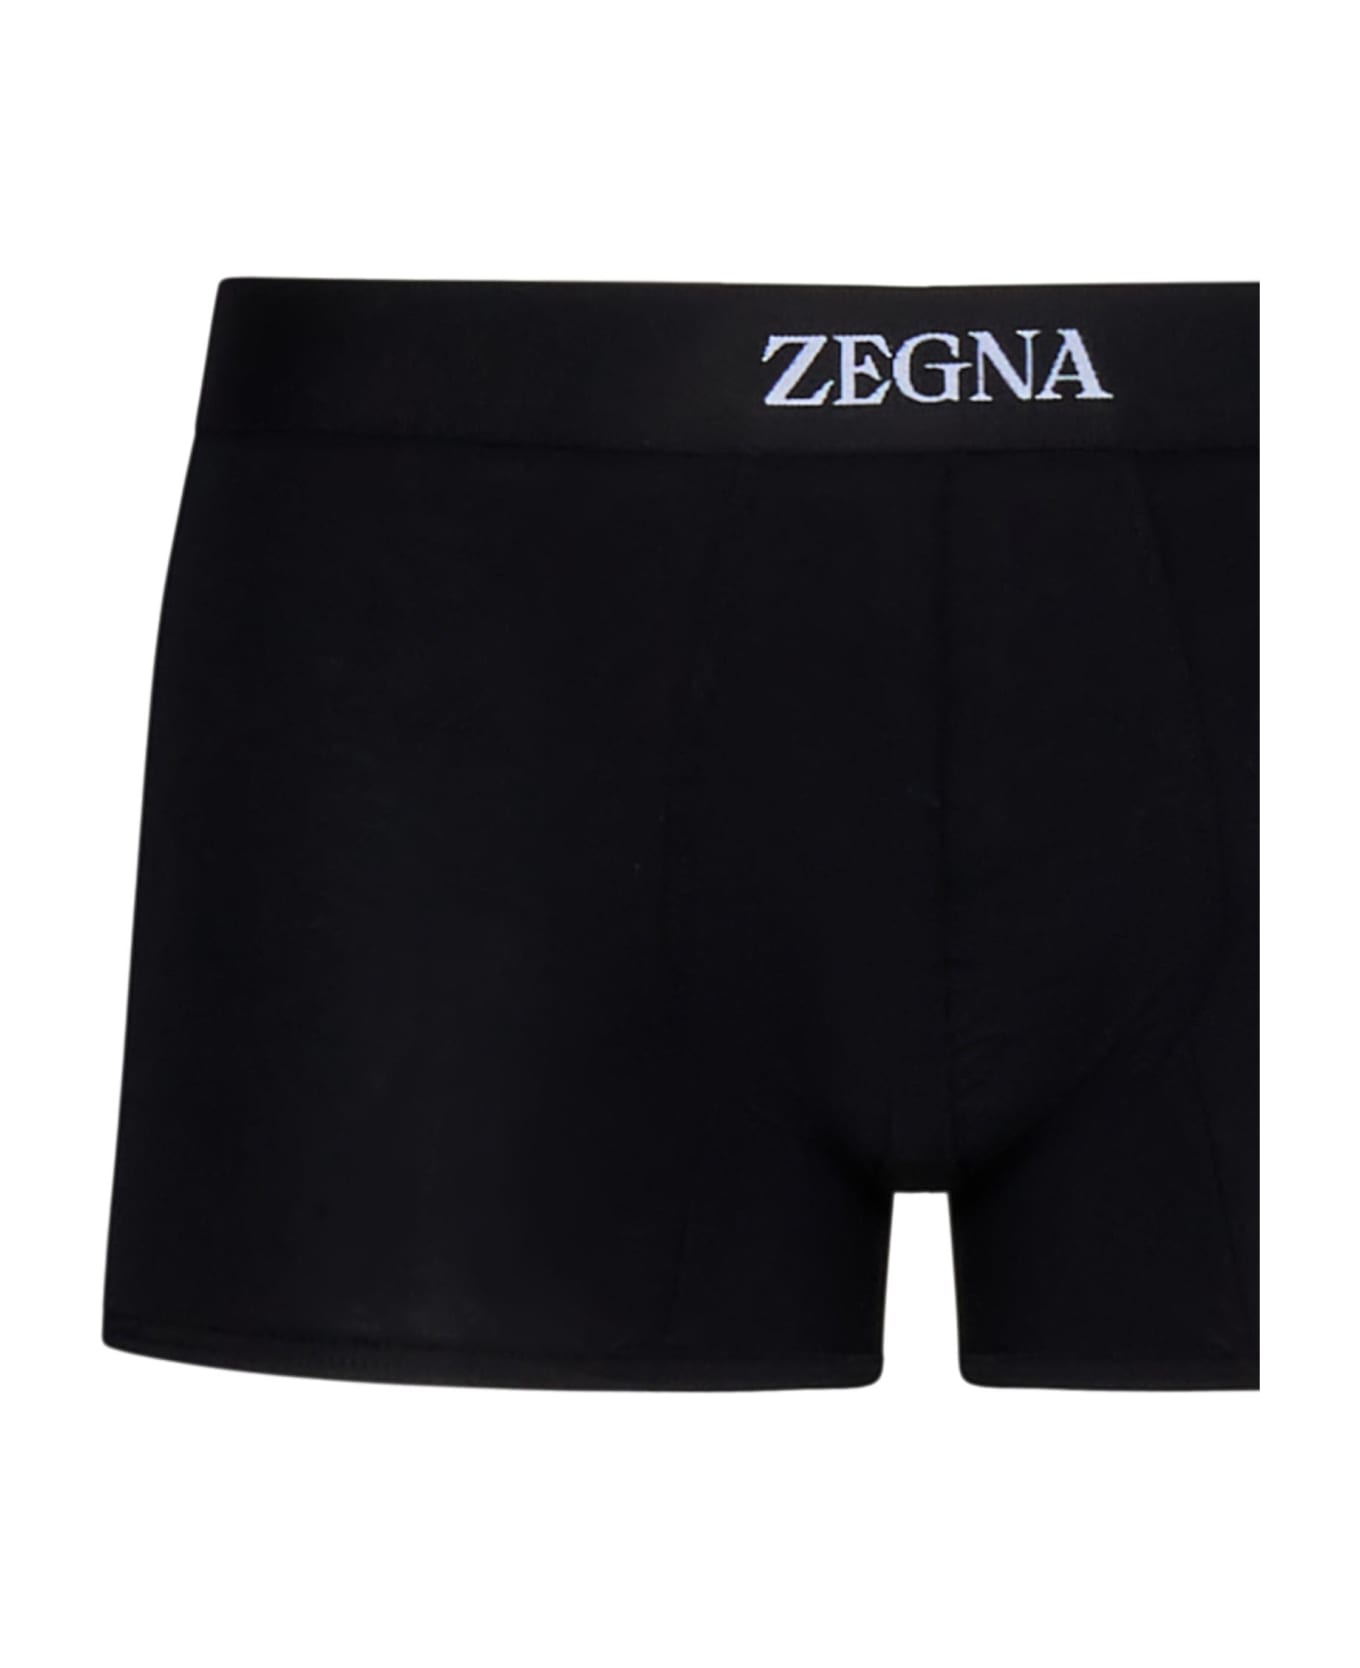 Zegna Boxer - Black ショーツ